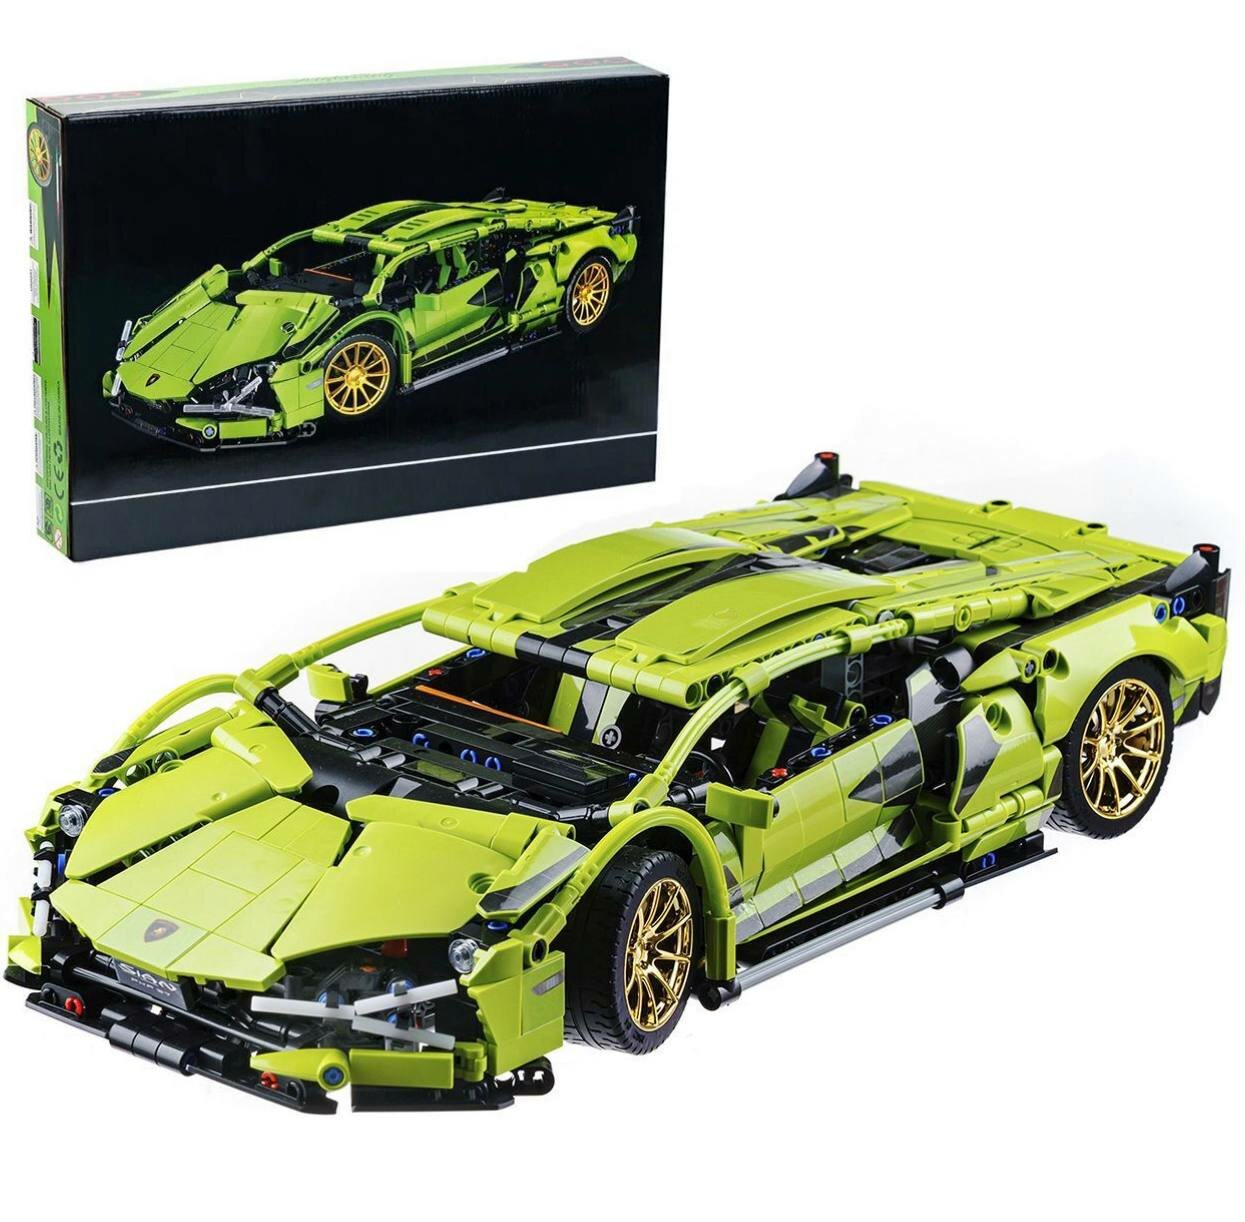 Конструктор машина Техник Lamborghini Sian FKP 37 1280 деталей / Совместим с Lego Trchnic